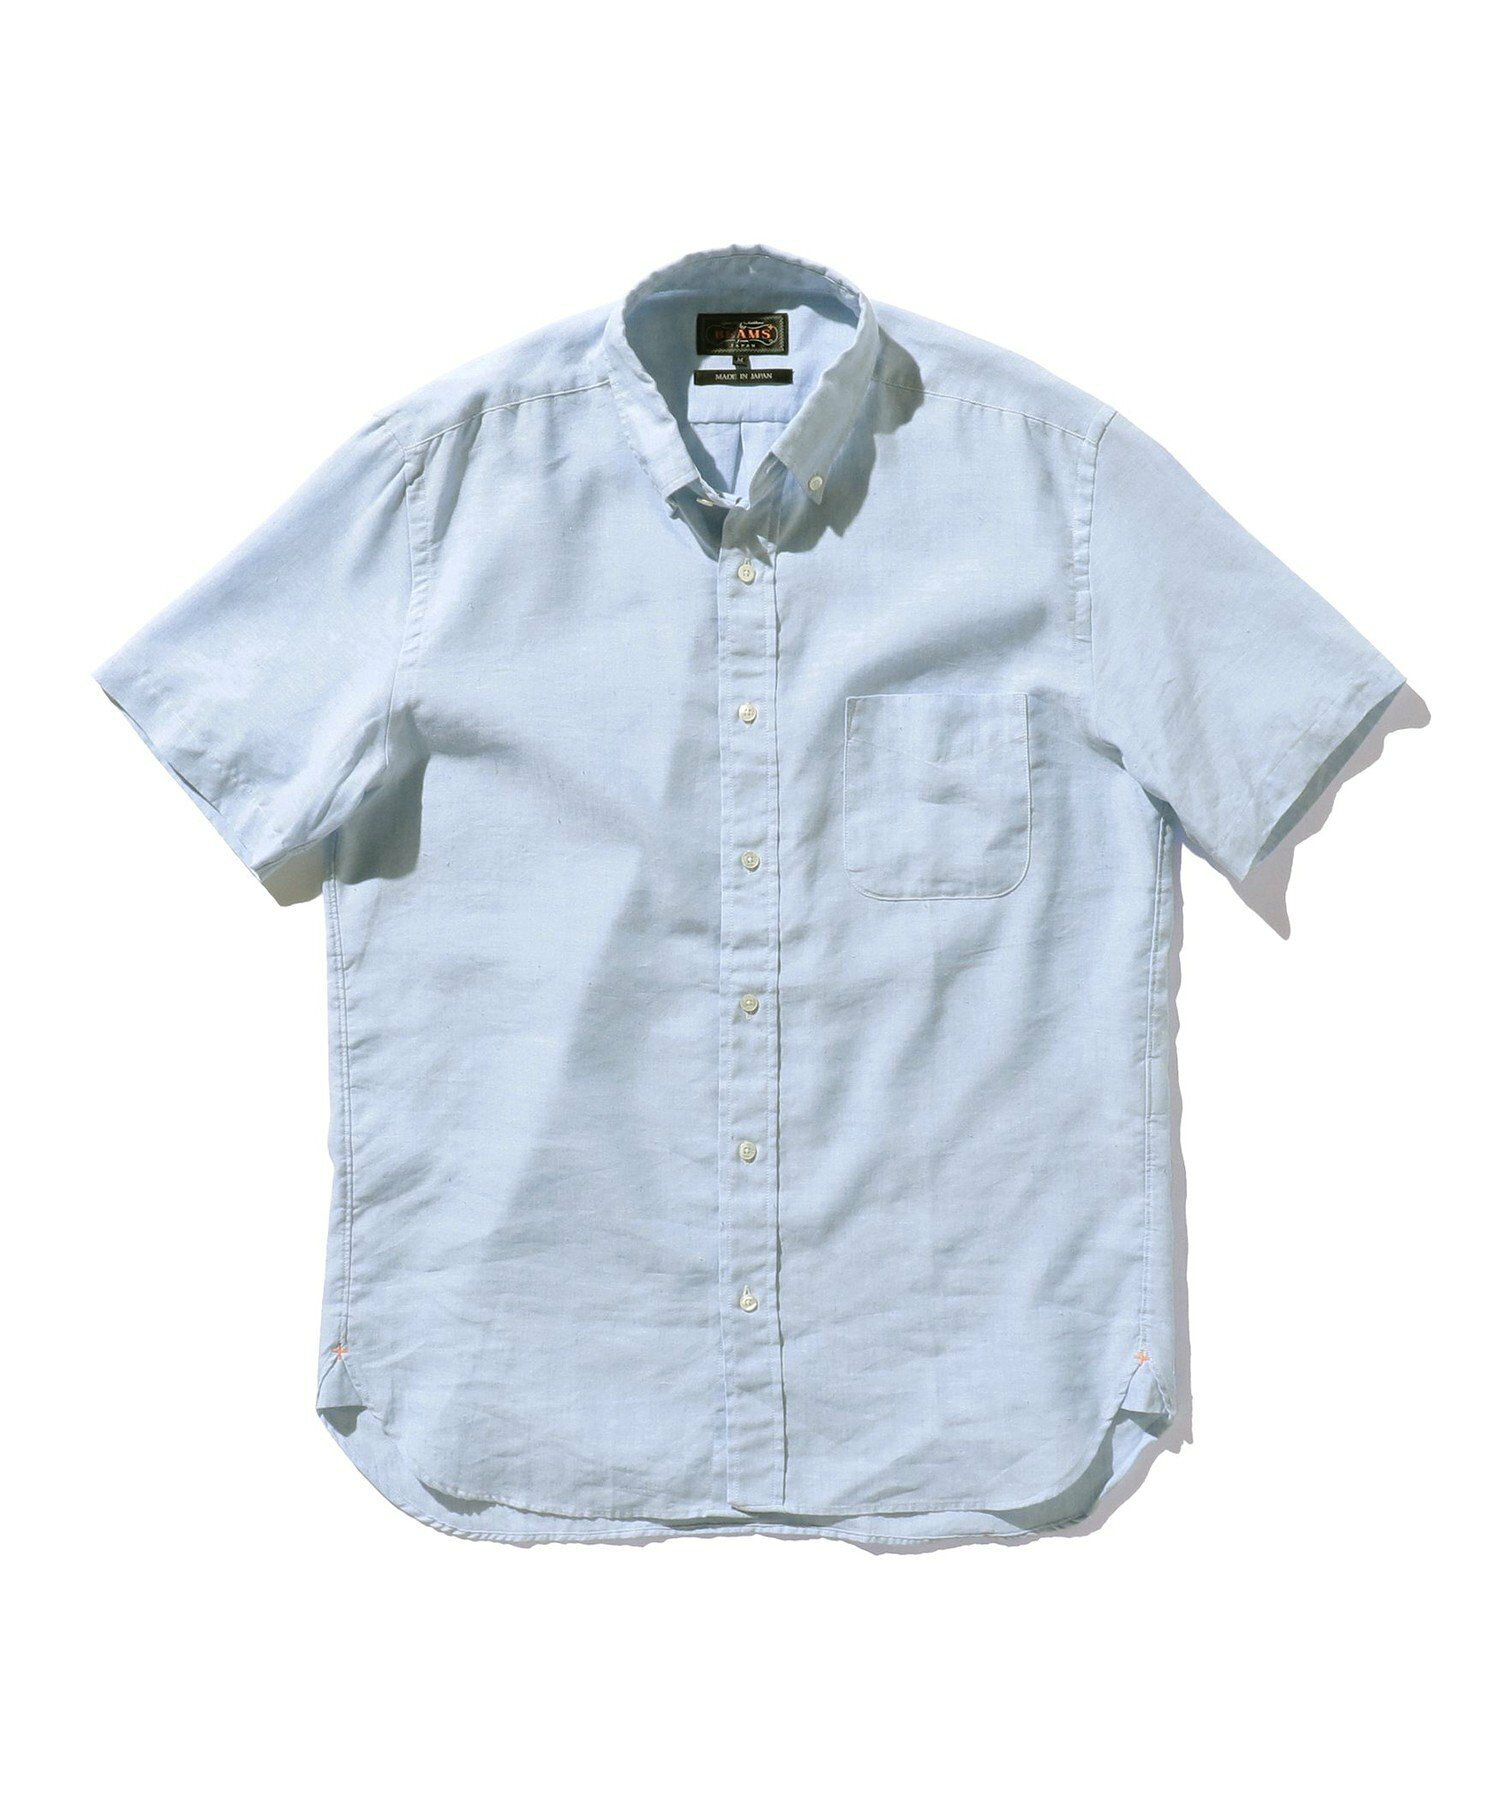 【ビームスの百名品】BEAMS PLUS / リネン COOLMAX(R) ボタンダウン ショートスリーブシャツ